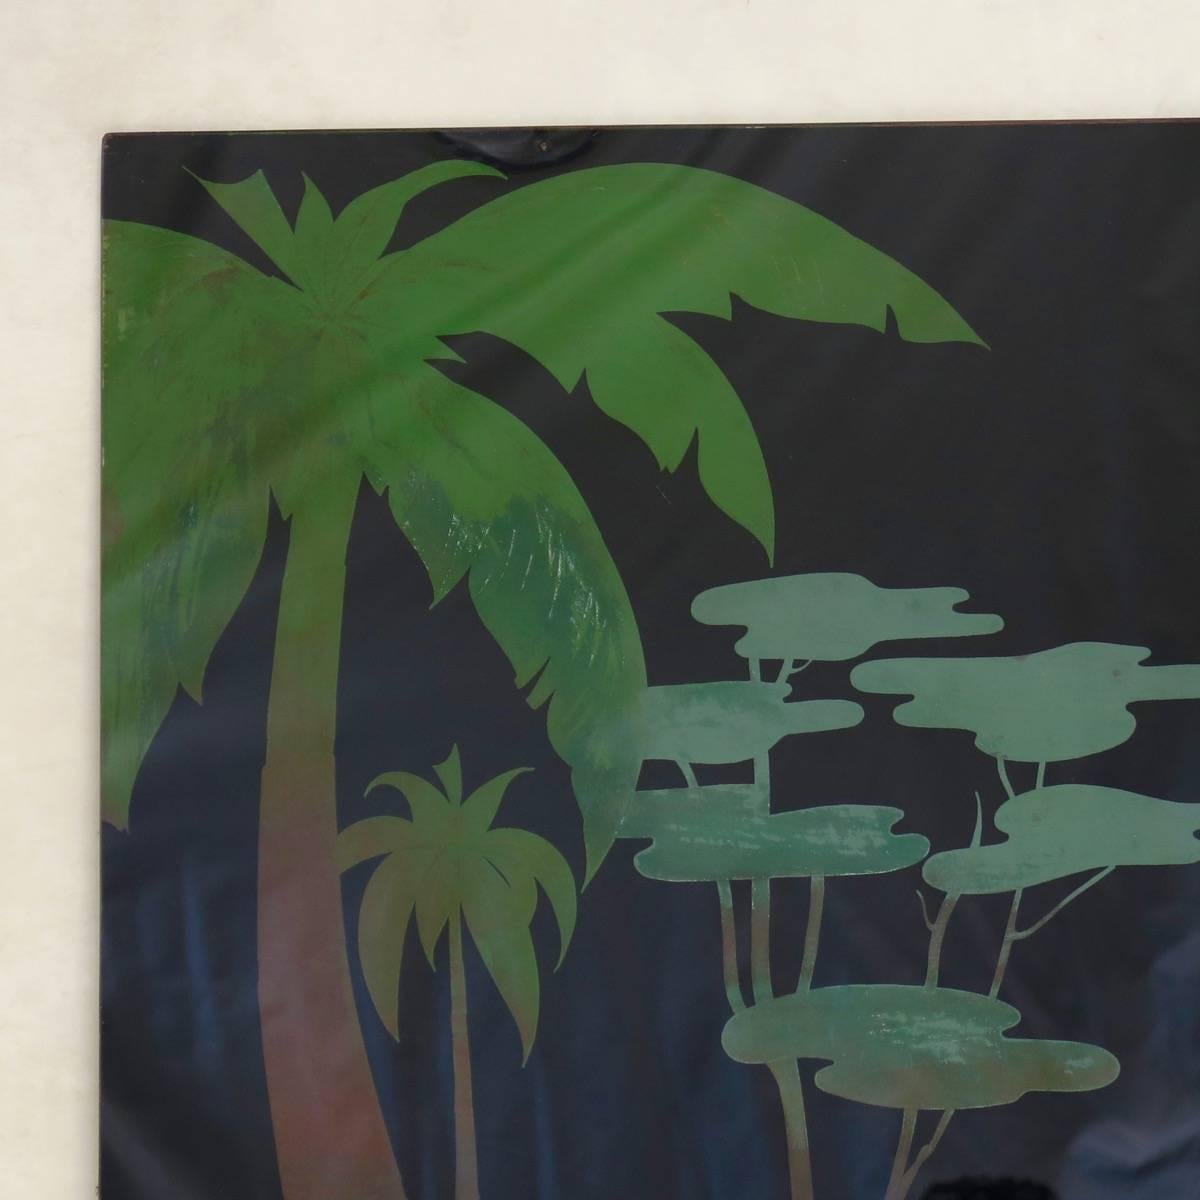 Très joli et décoratif grand panneau de verre fixé sous verre, représentant un couple de cerfs dans un cadre tropical paisible, sur fond noir. La technique de la peinture sur l'envers rend les couleurs très vives et leur donne une belle profondeur.